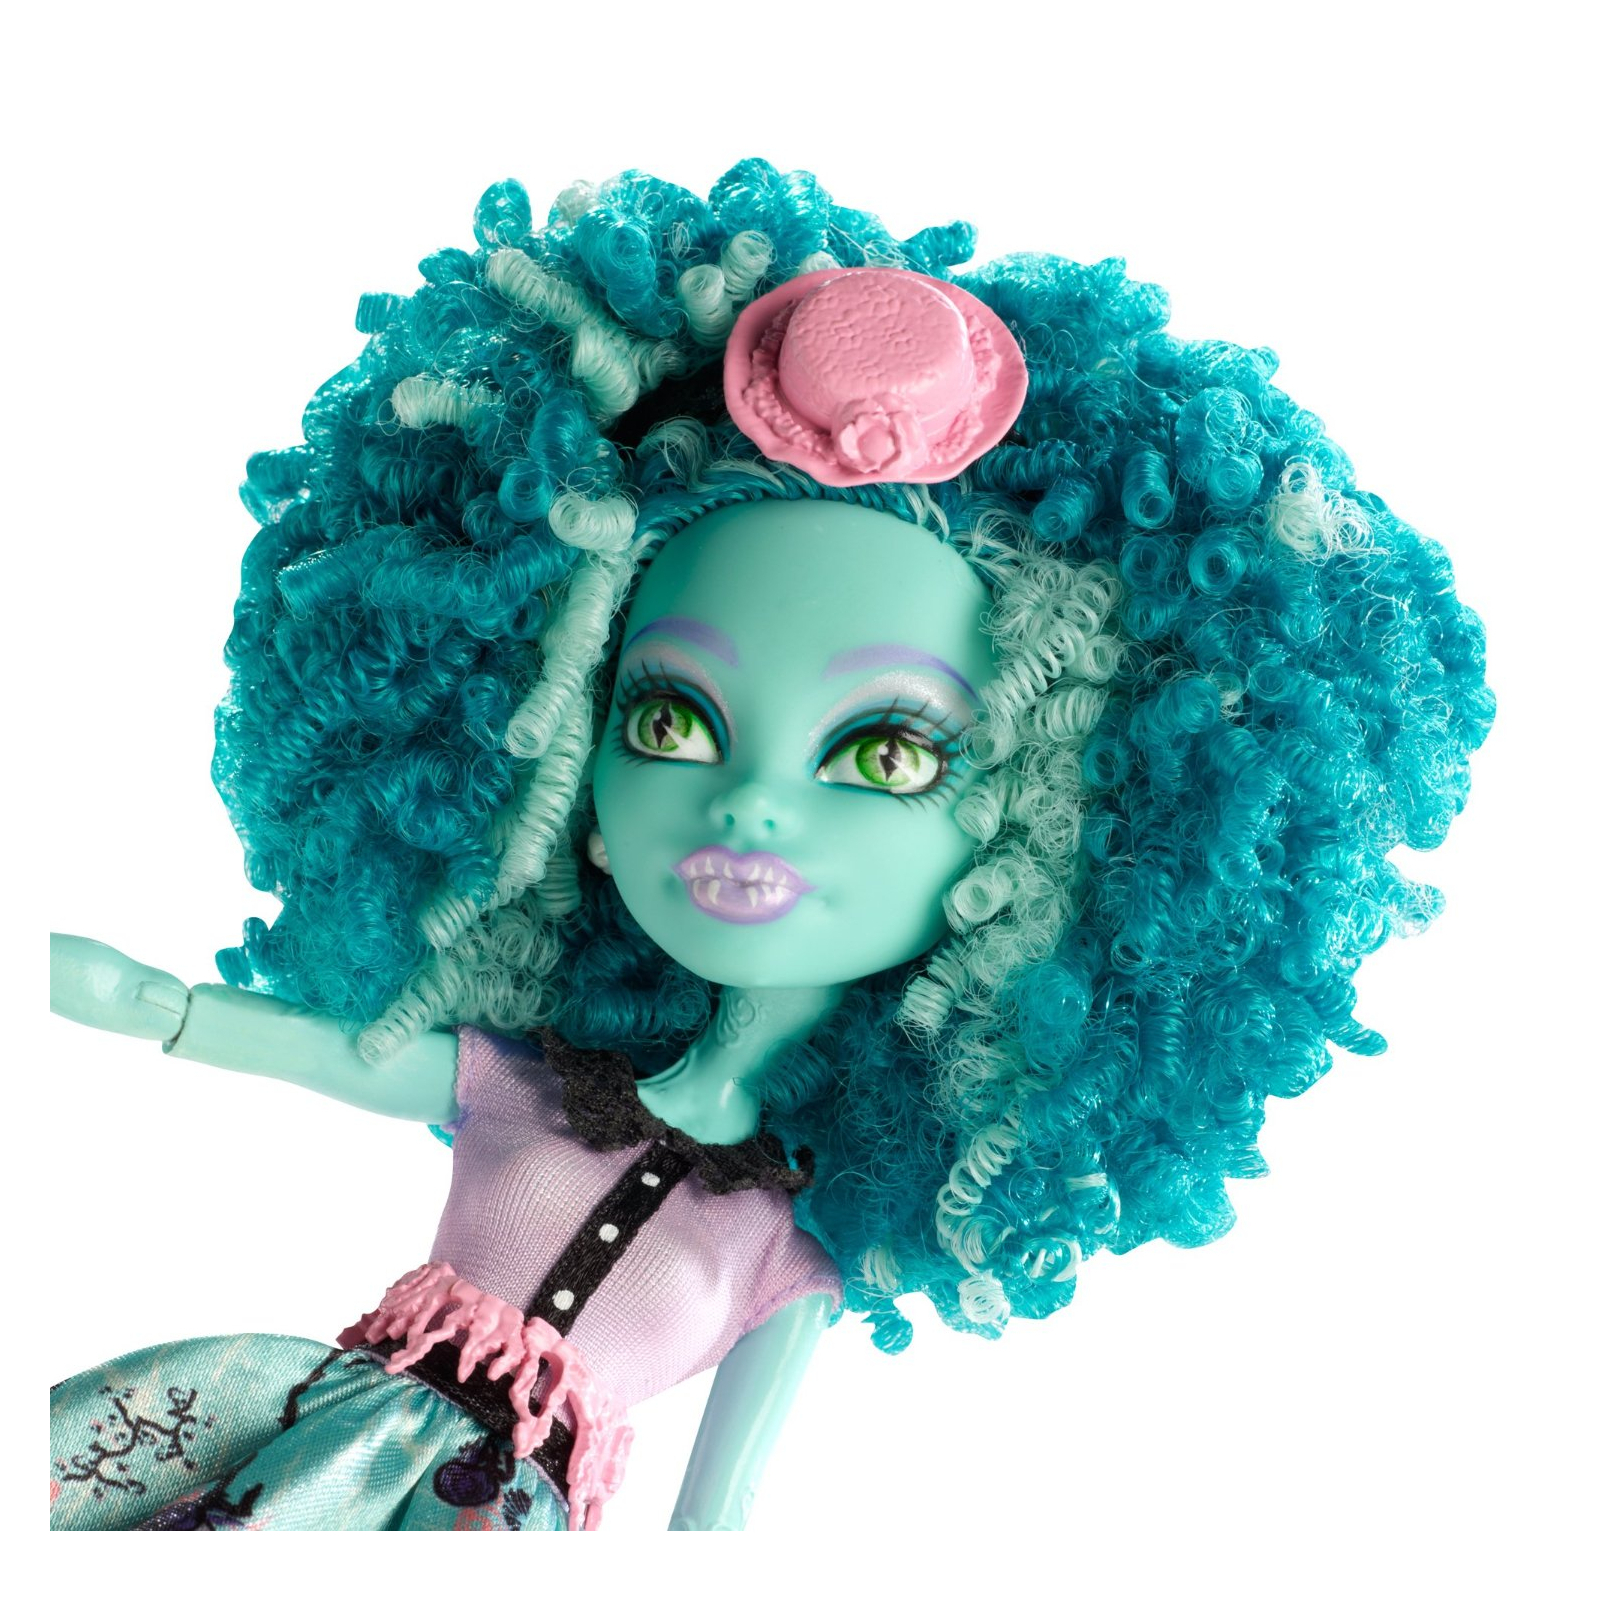 Кукла Monster High Хани Свомп из м/ф Страх, камера, мотор (BLX17-2) изображение 3